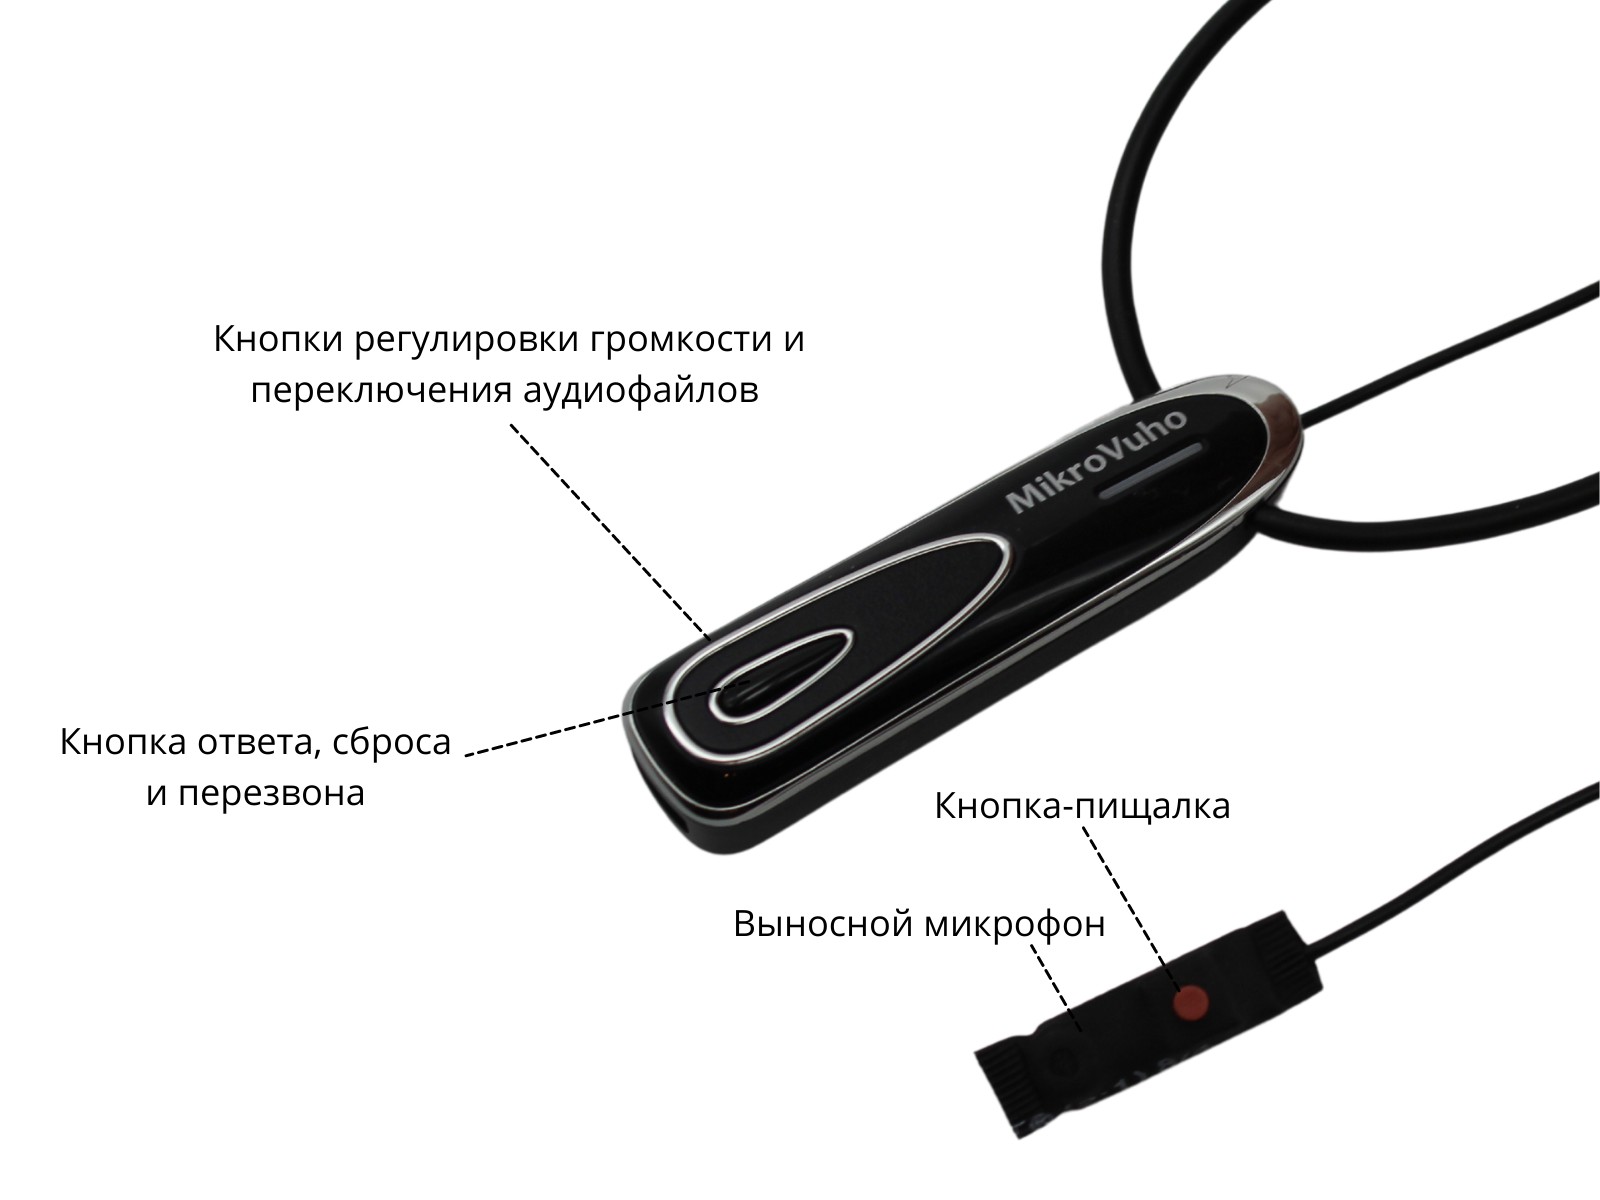 Универсальная гарнитура Bluetooth Premier с капсулой Premium и магнитами 2 мм - изображение 7